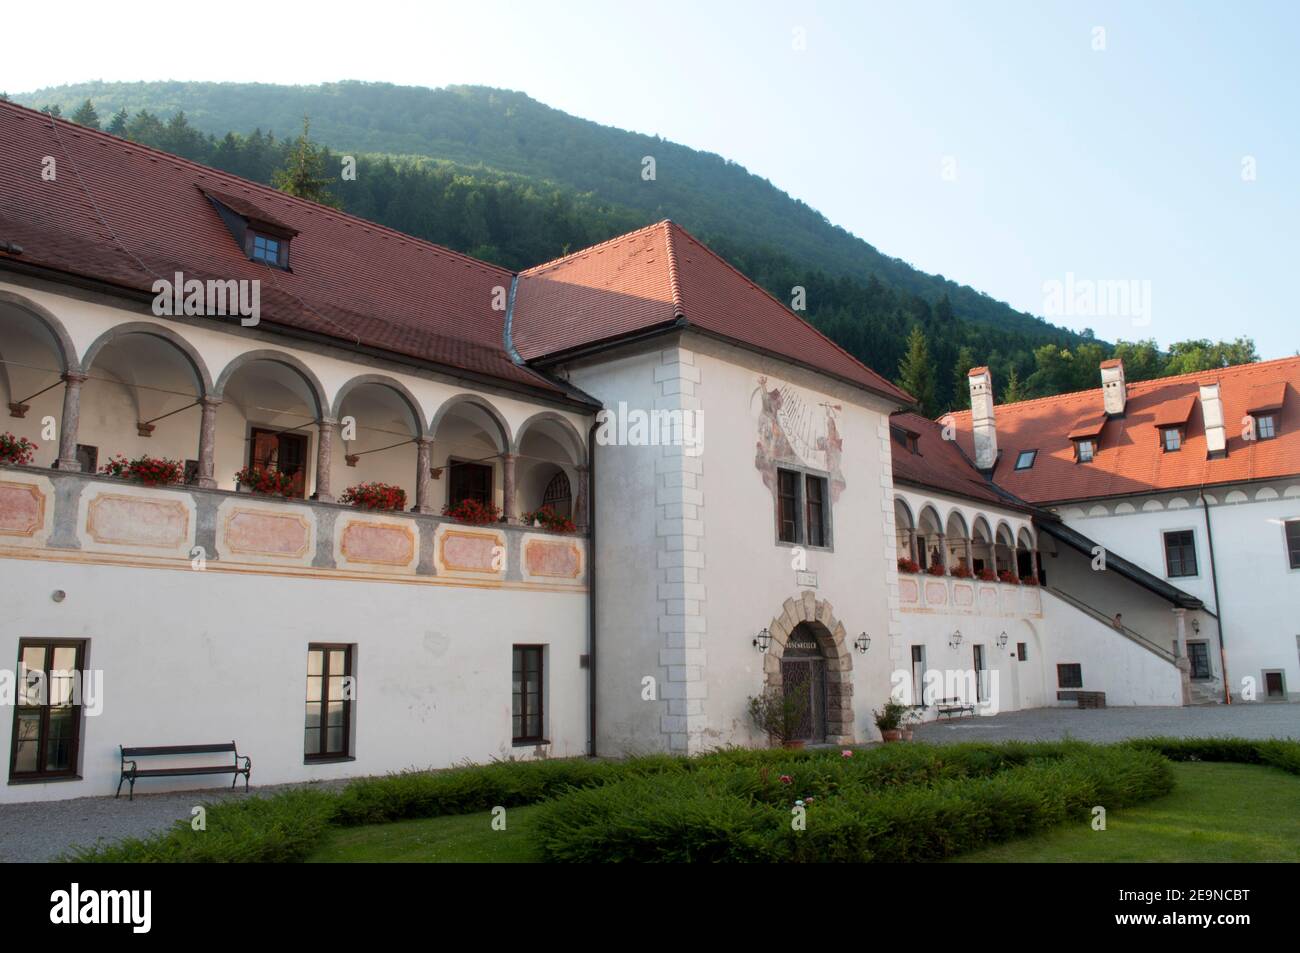 Kartause, Kartause aus dem 14th. Jahrhundert in Gaming bei Scheibbs, Niederösterreich, Österreich (Juni 2012) Stockfoto